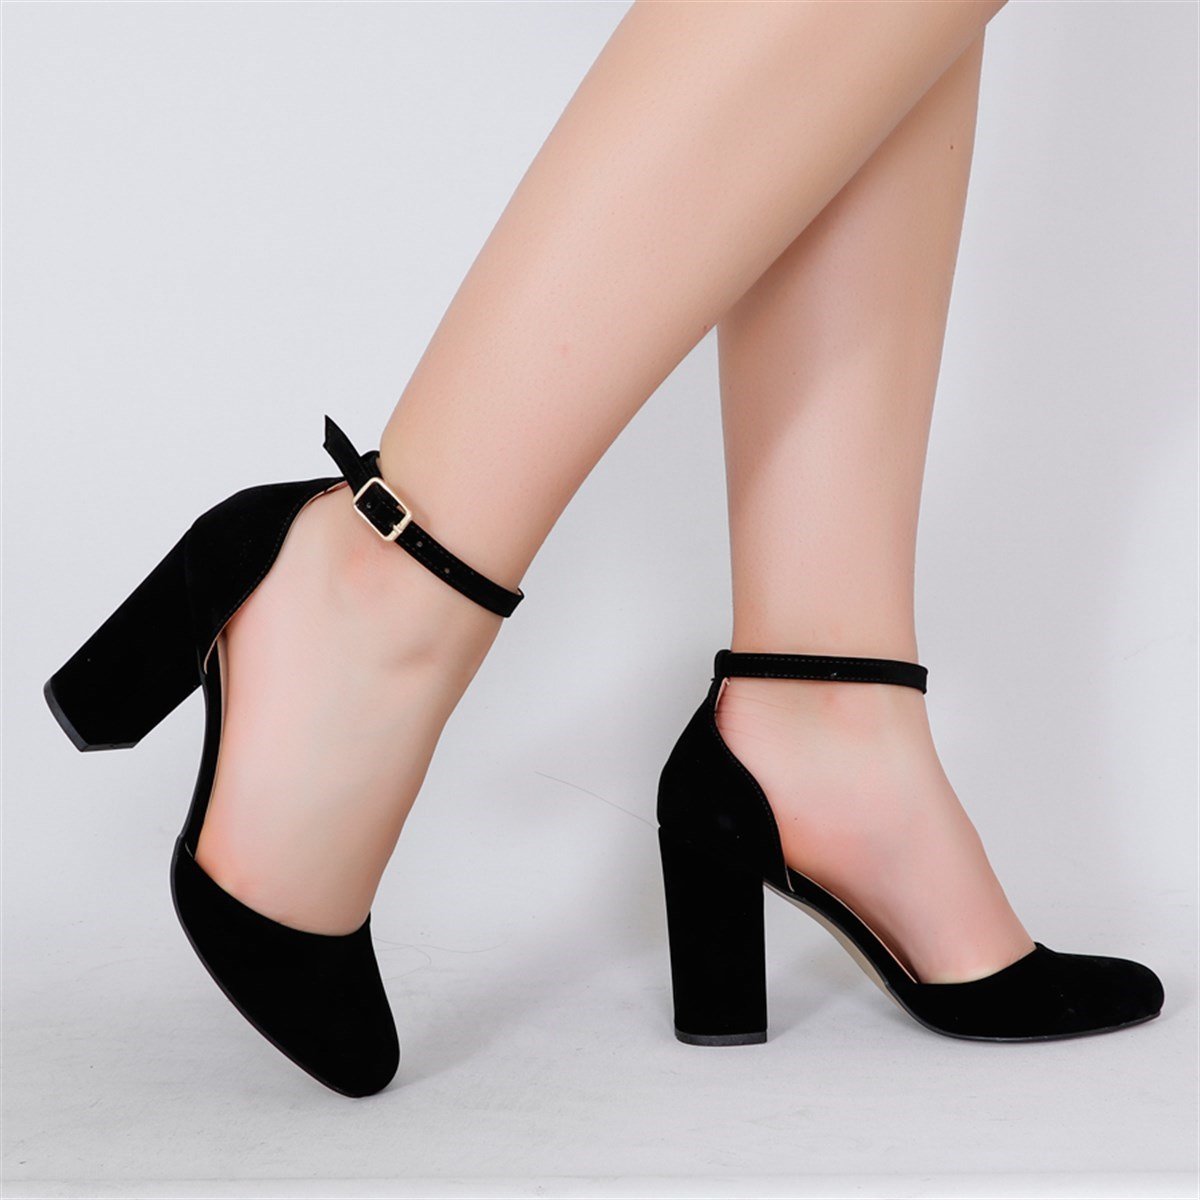 Siyah süet Kalın Topuklu Kadın Ayakkabı EL101Y Fiyatı ve Modelleri